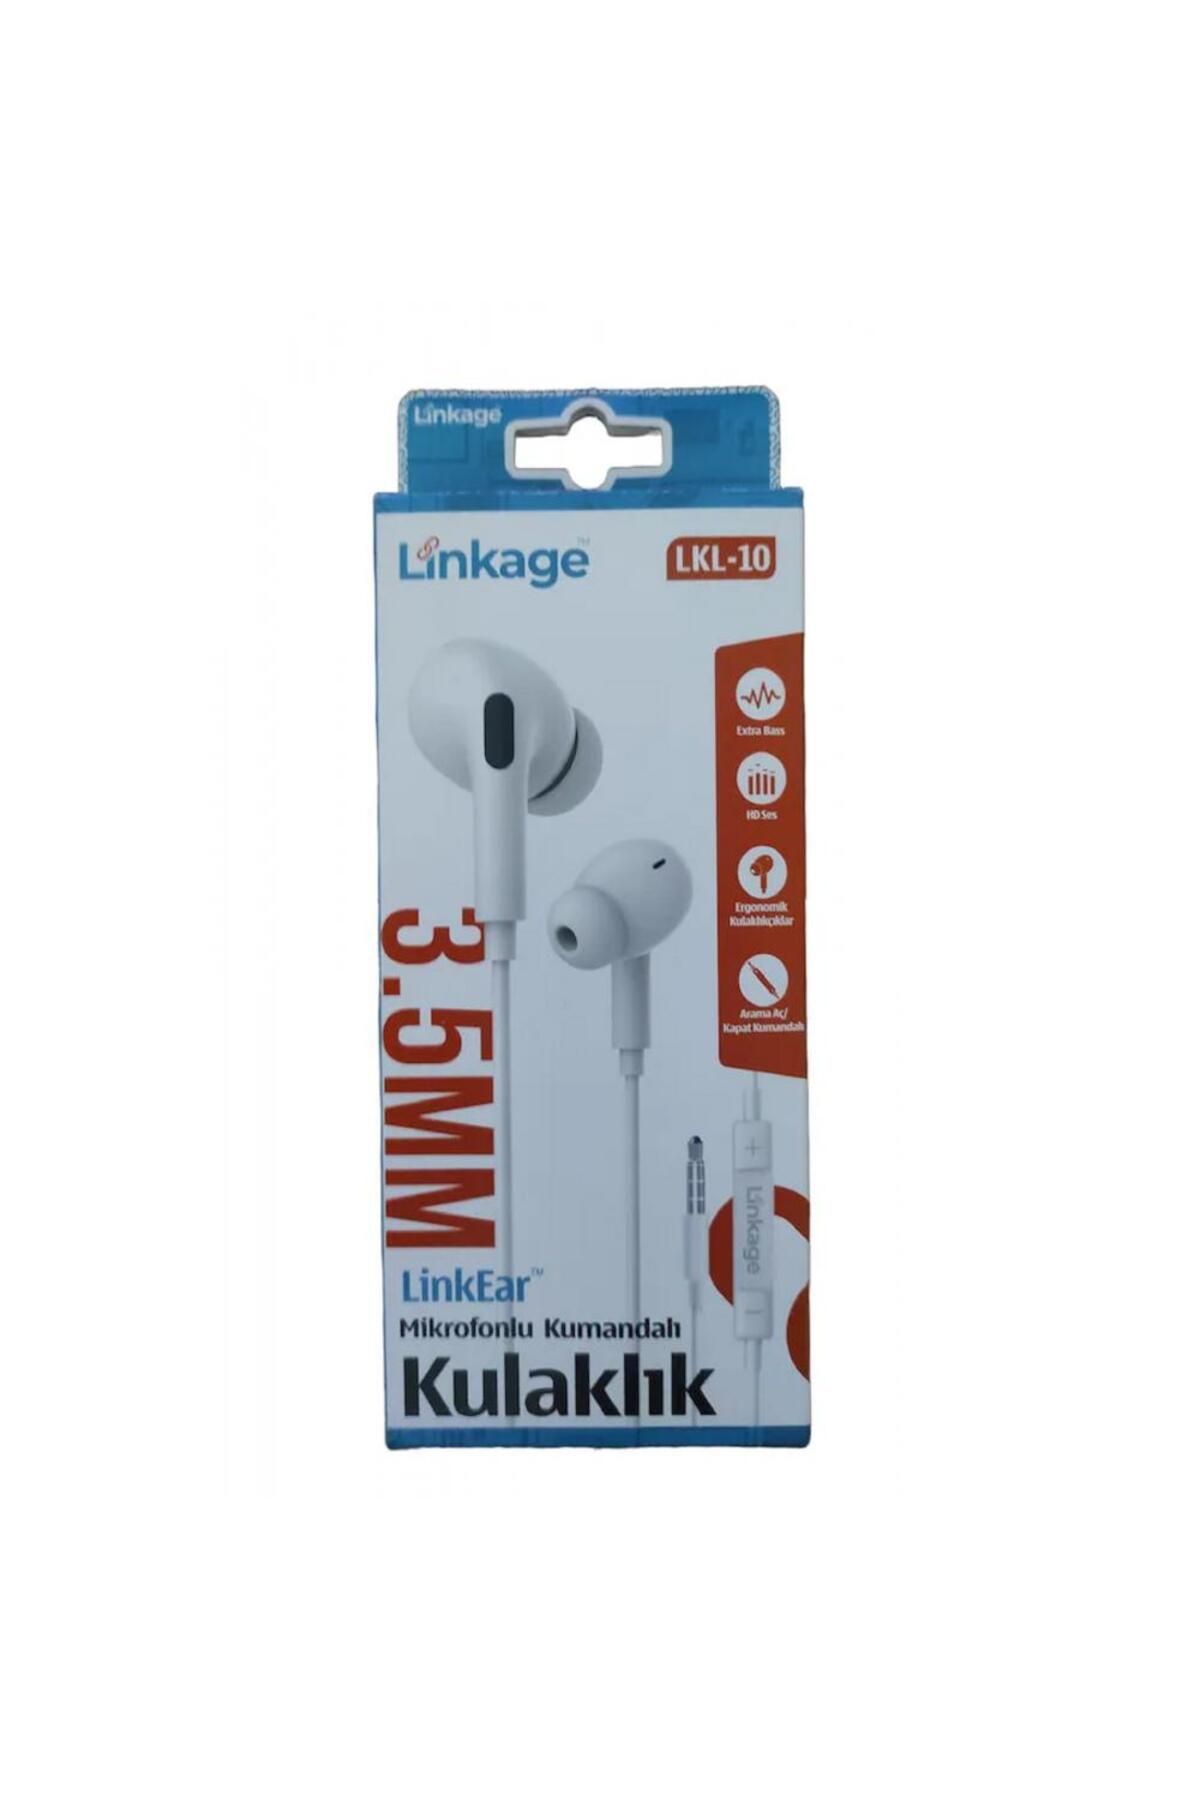 Linkage LKL-10 Uyumlu Mikrofonlu Kumandalı Kulaklık